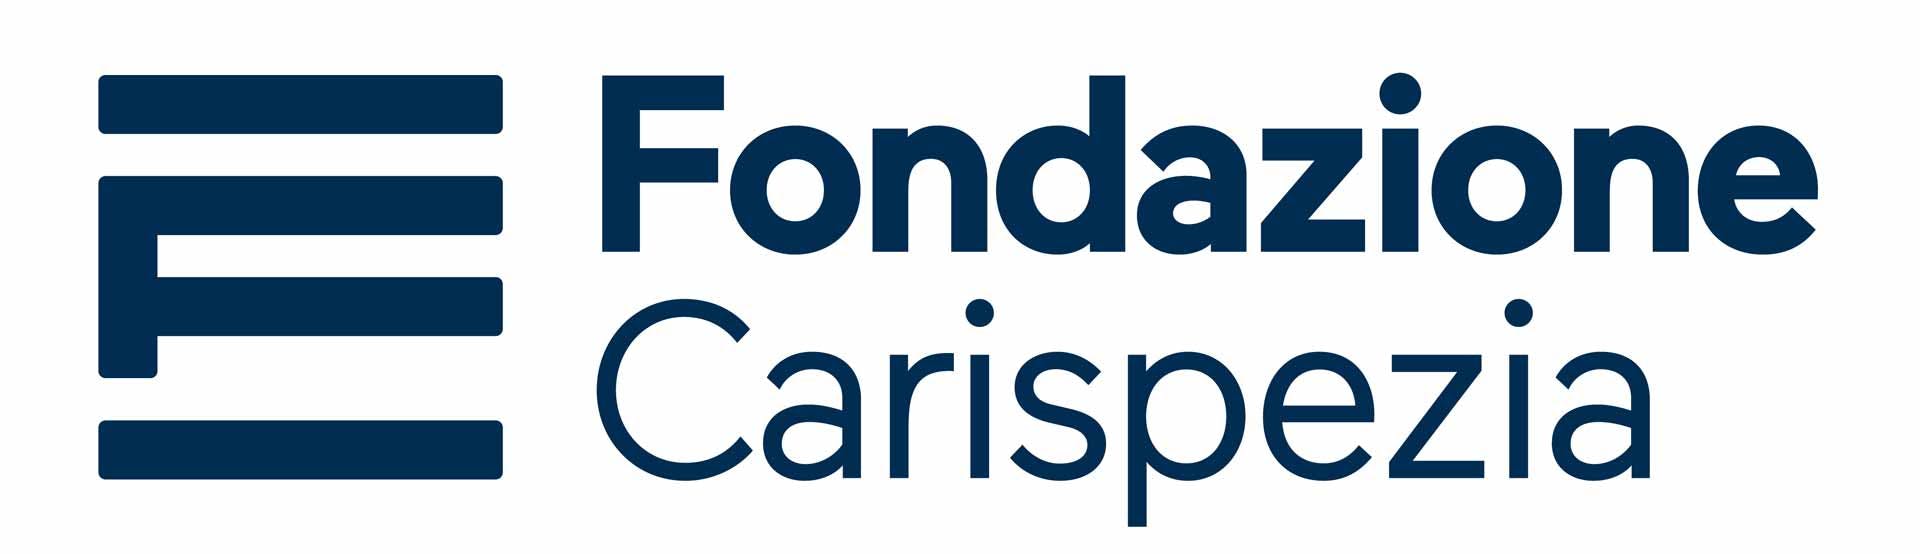 Fondazione Carispezia